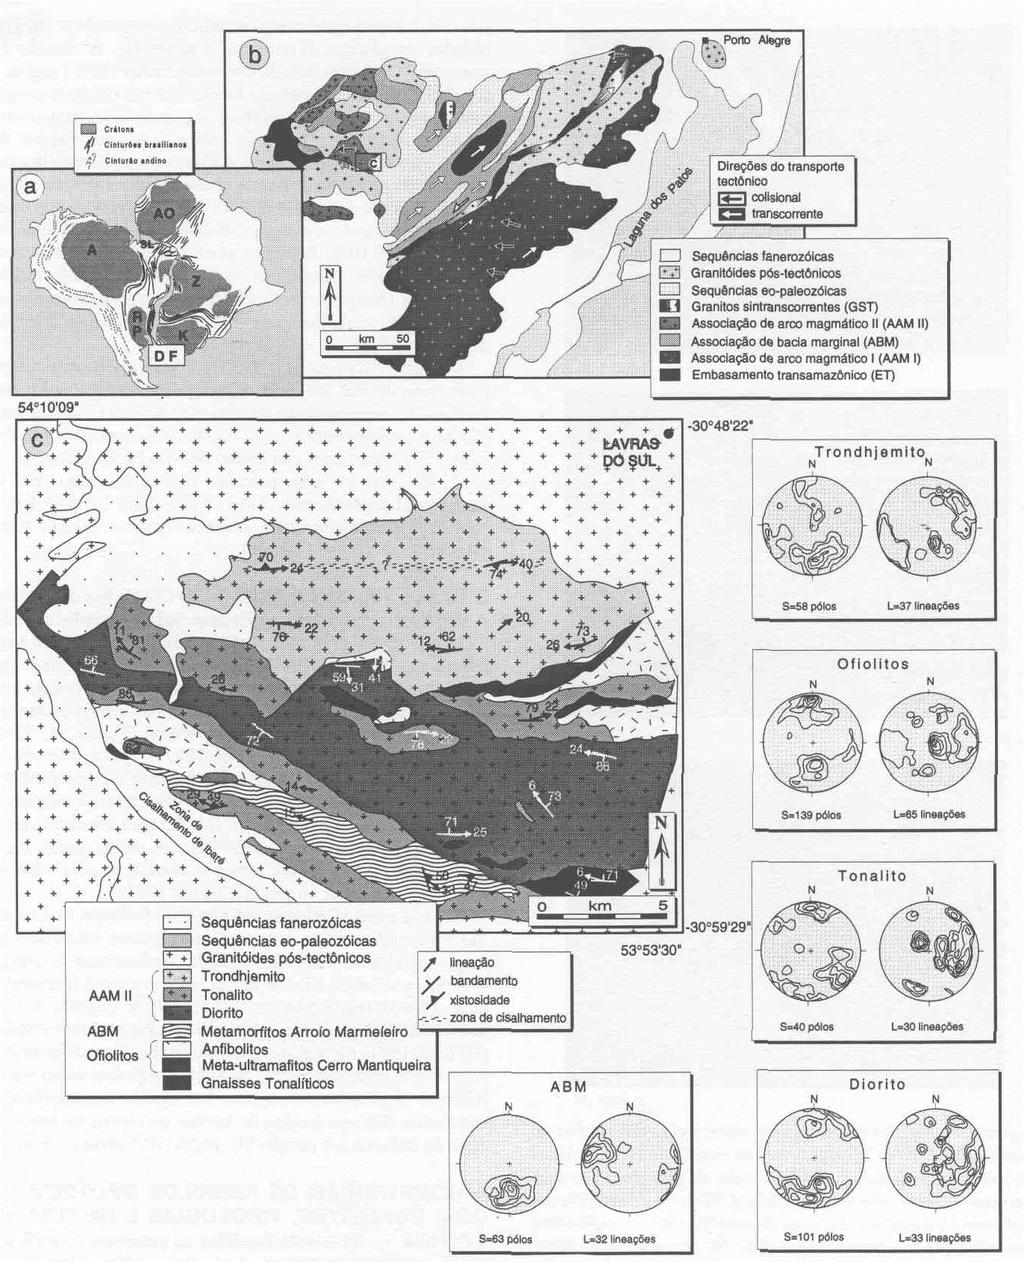 Revista Brasileira de Geociências, volume 25, 1995 365 Figura 9 - Unidades do Sistema Geodinâmica do Gondwana Oeste durante o Neoproterozóico (a) incluindo o mapa simplificado das associações